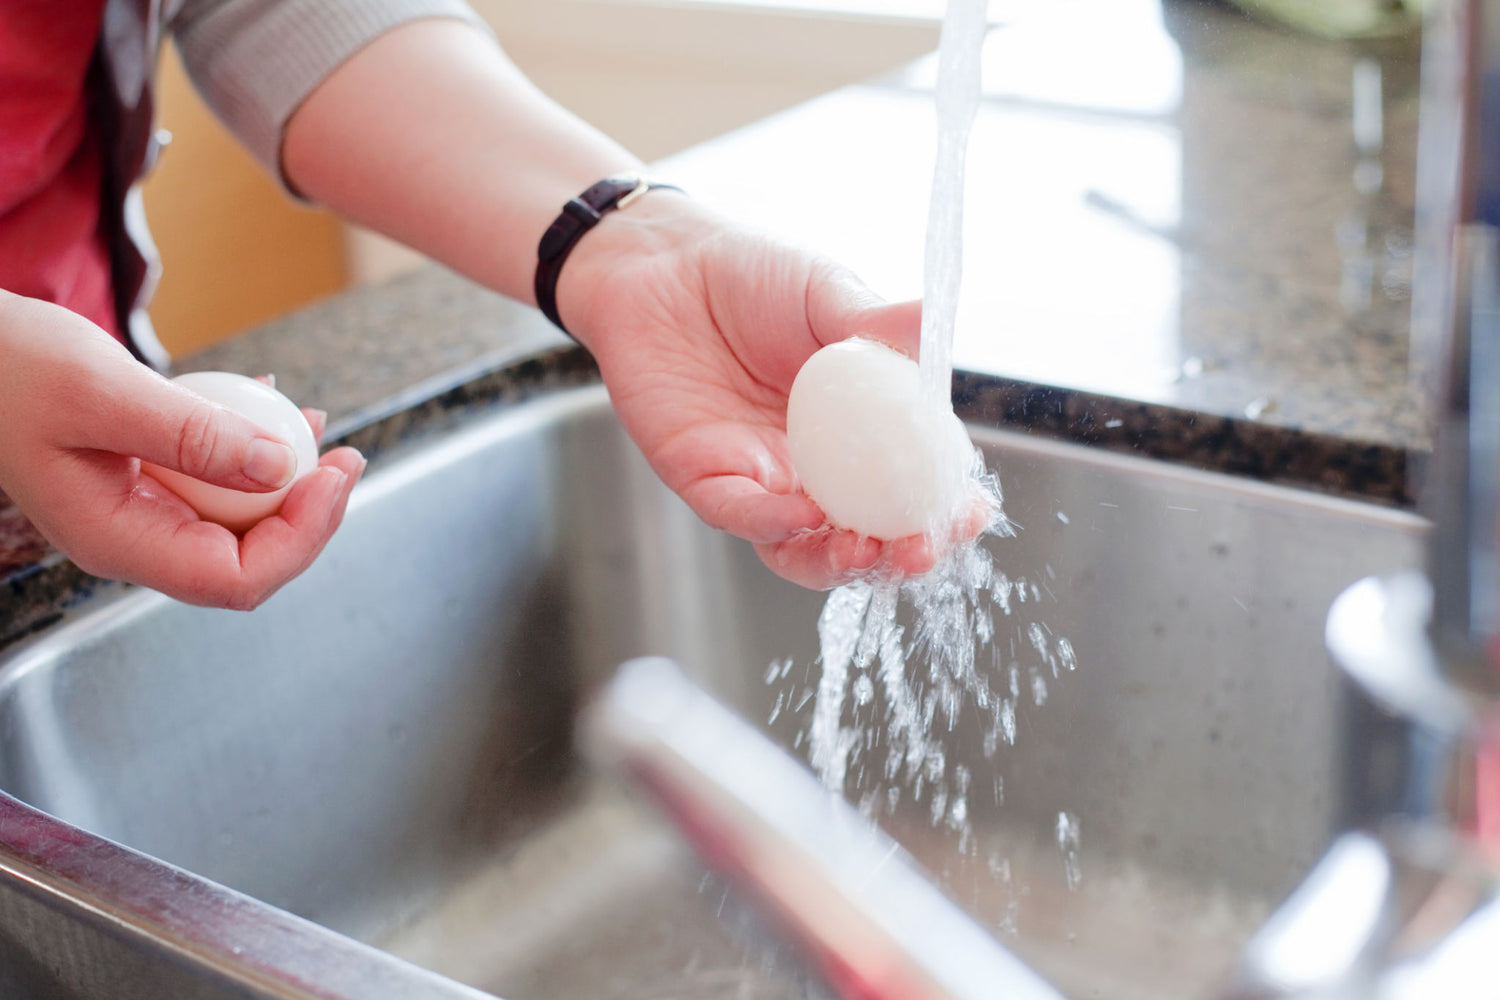 Should you wash fresh eggs?